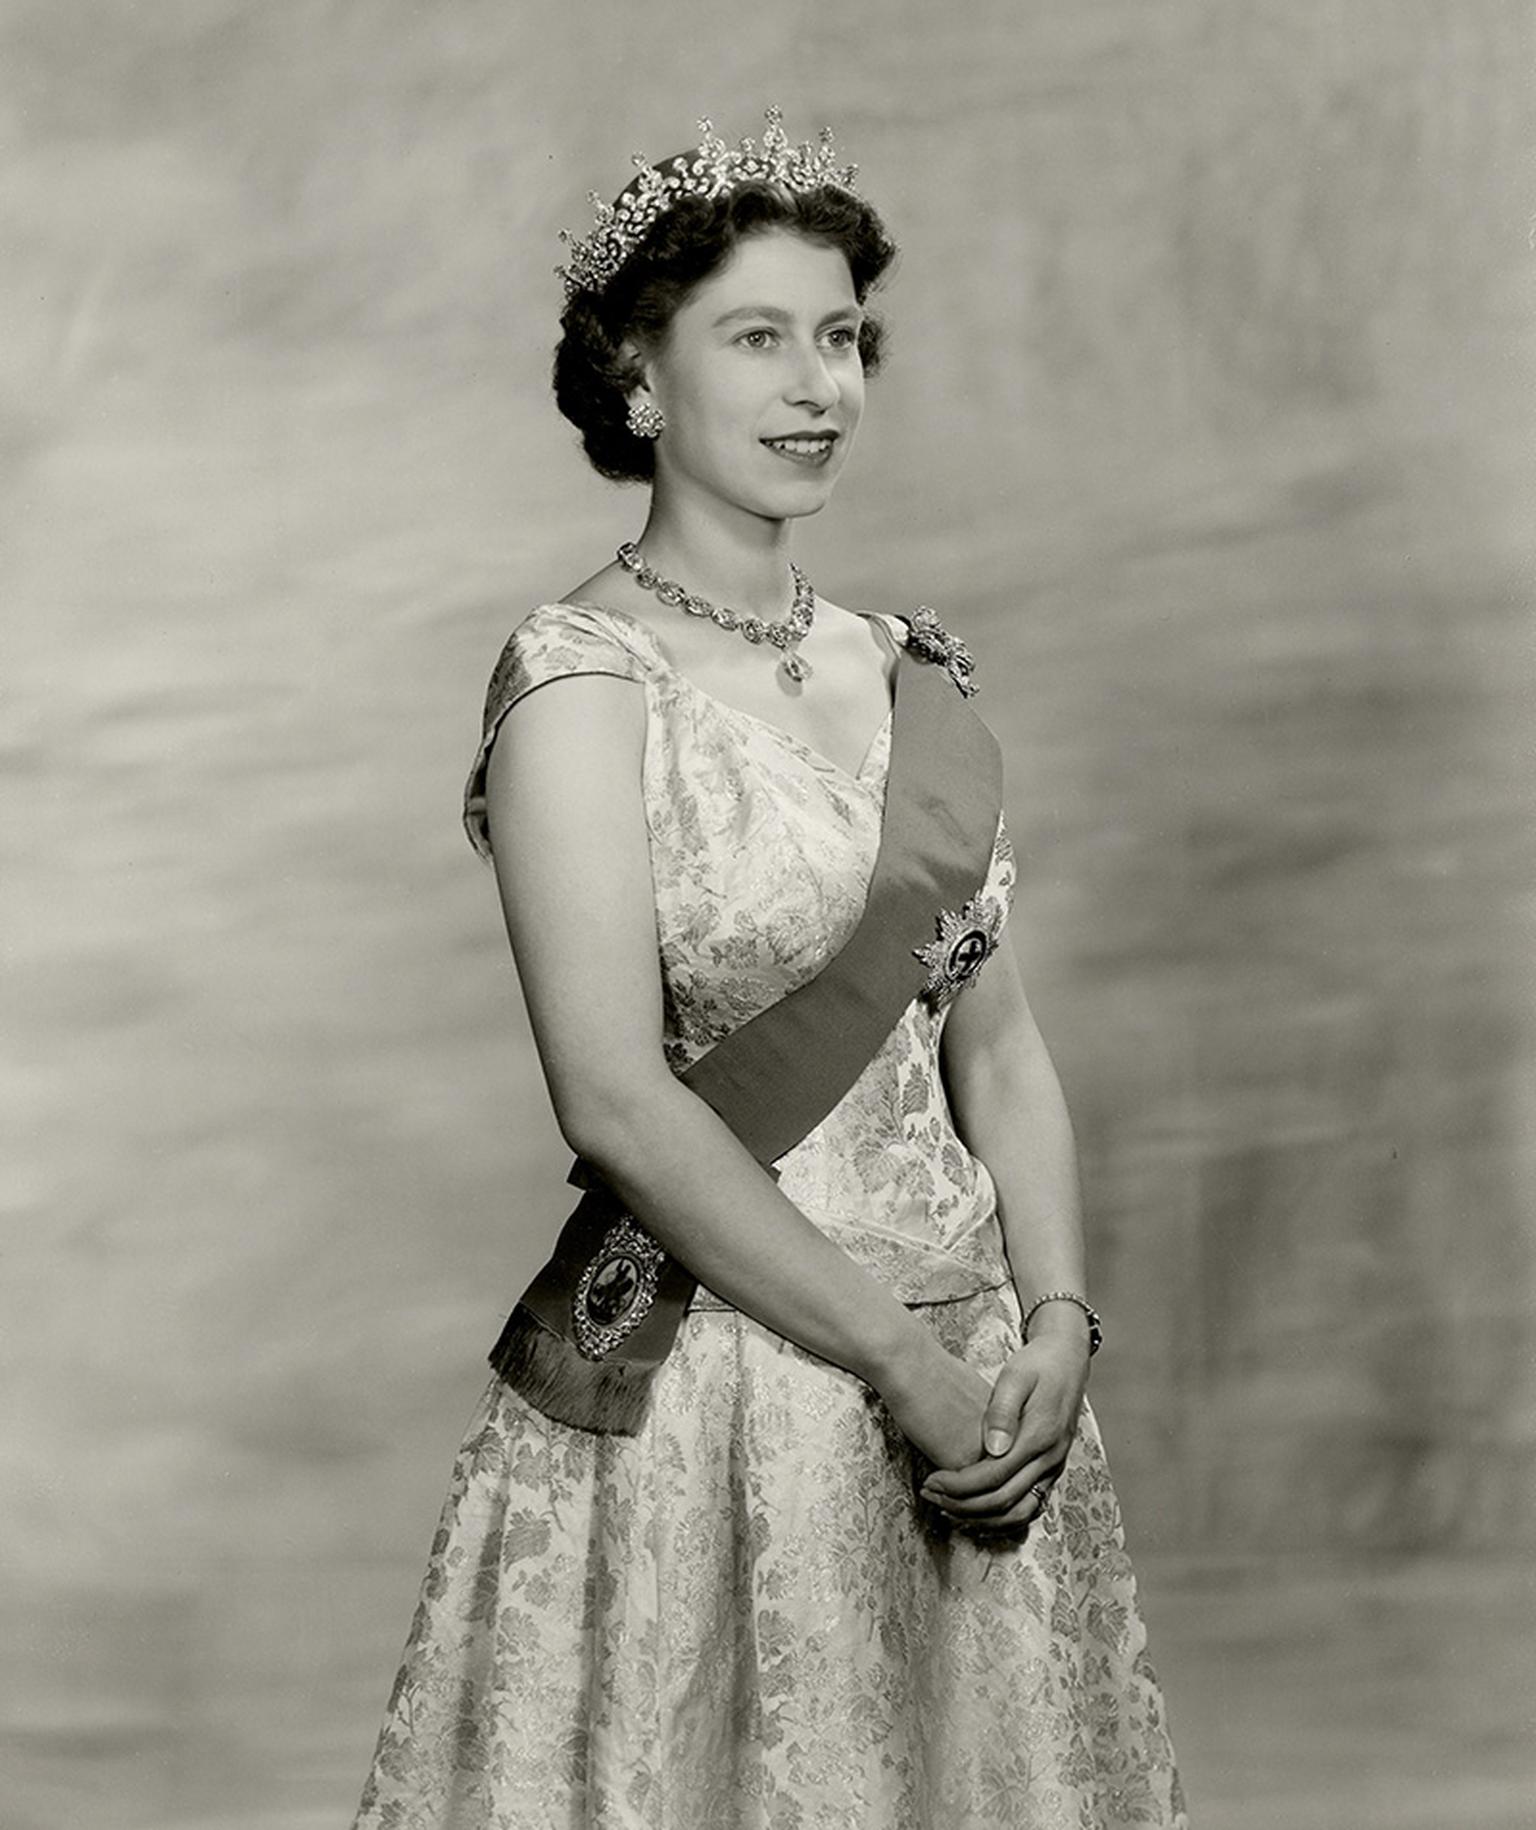 Queen-Elizabeth-II-wearing-Queen-Mary-Girls-of-Great-Britain-and-Ireland-tiara.jpg